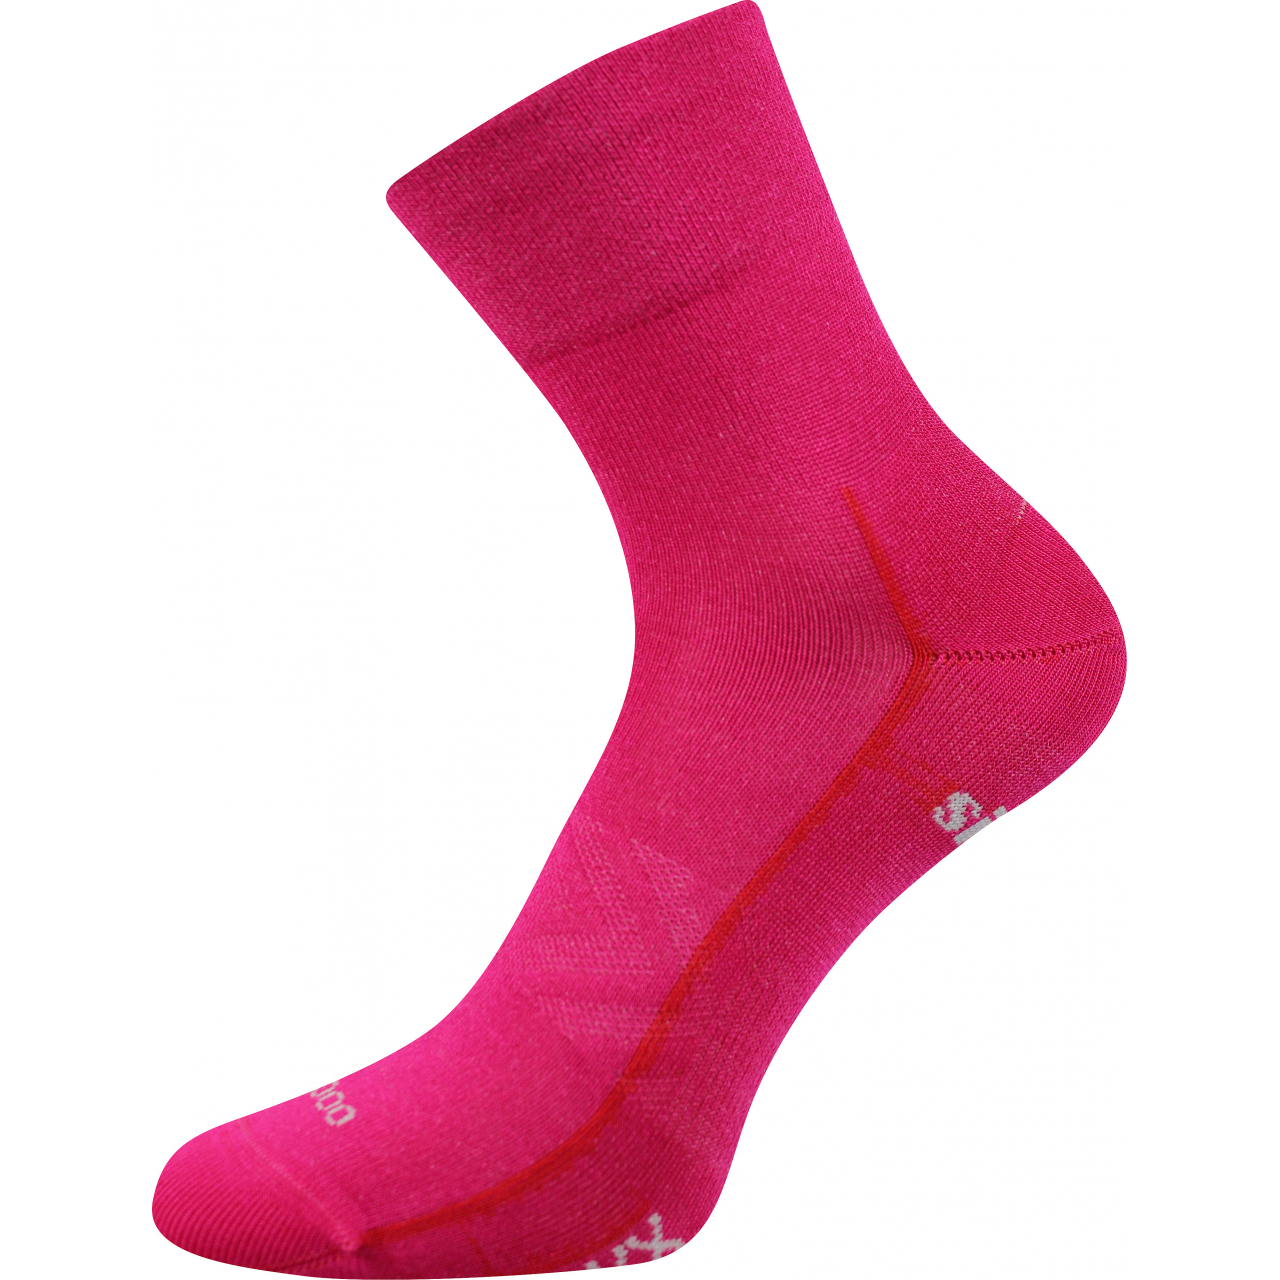 Ponožky sportovní unisex Voxx Baeron - tmavě růžové, 39-42